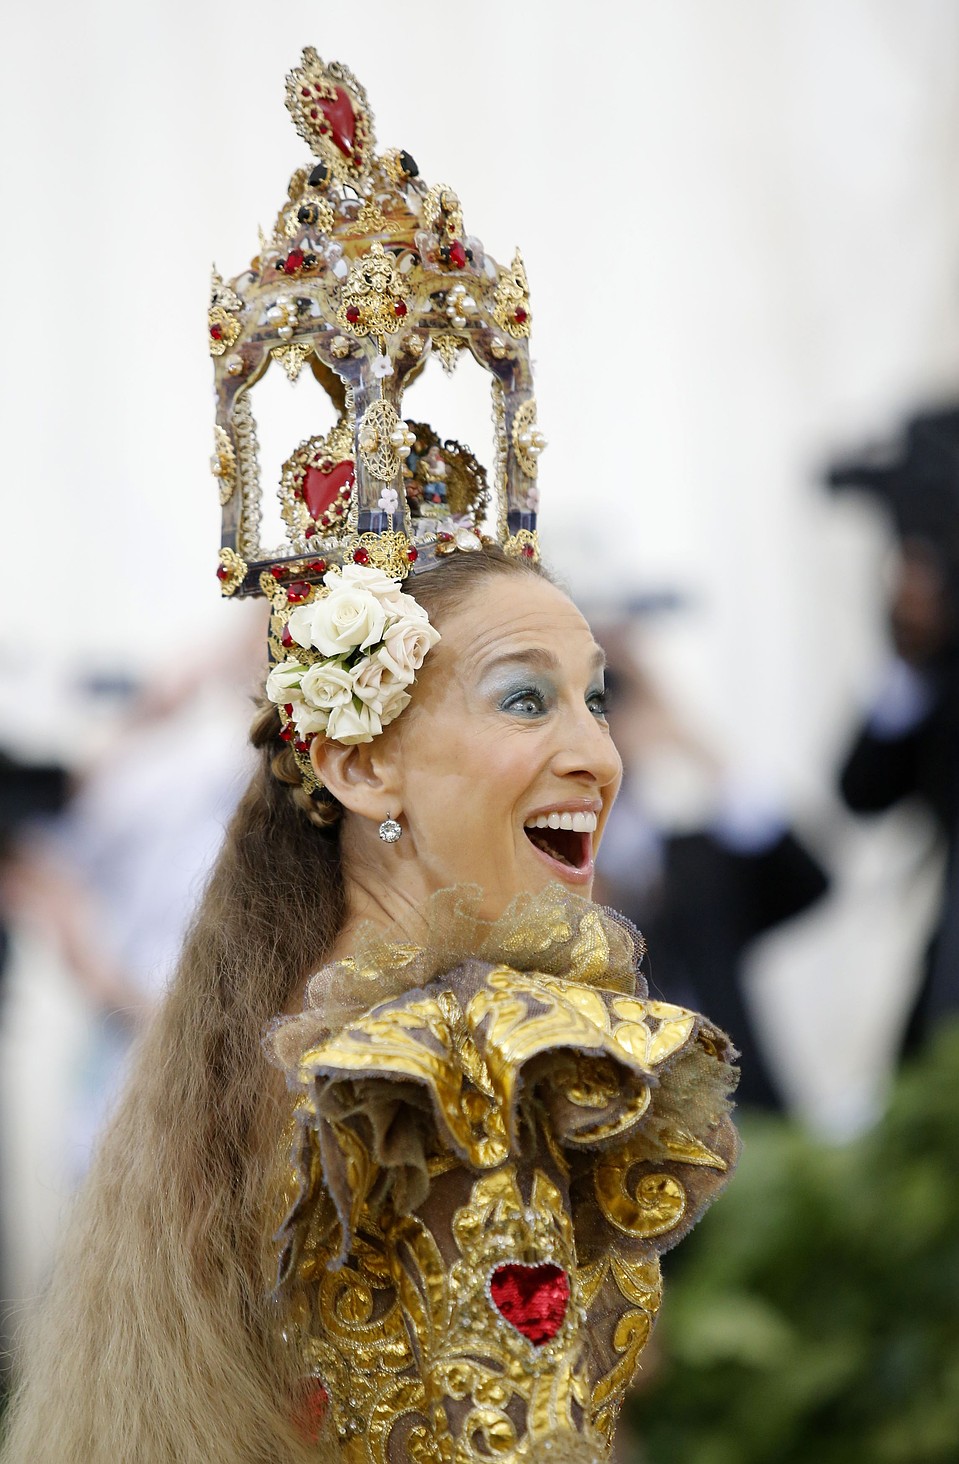 голову актрисы венчал необычный головной убор. Фото: REUTERS